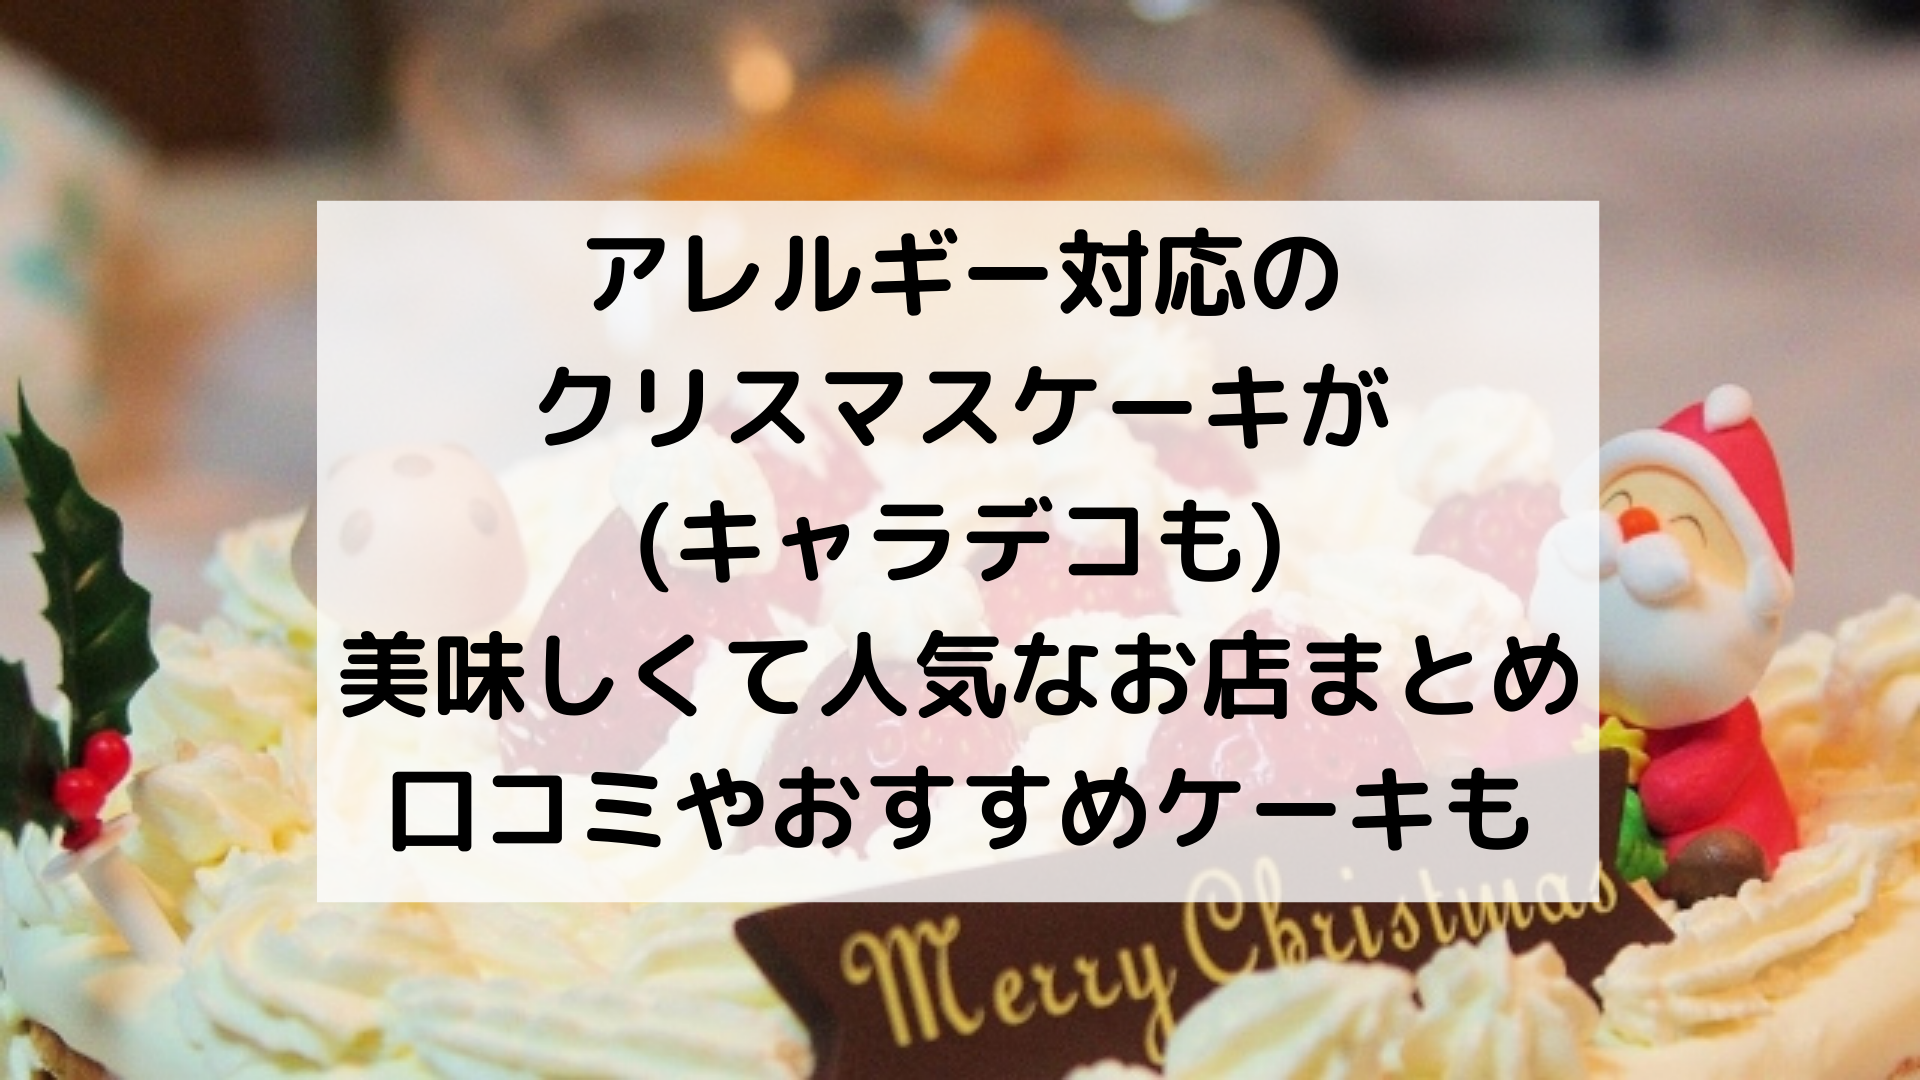 アレルギー対応クリスマスケーキ キャラデコも が人気で美味しいお店まとめ 佐倉家の日常